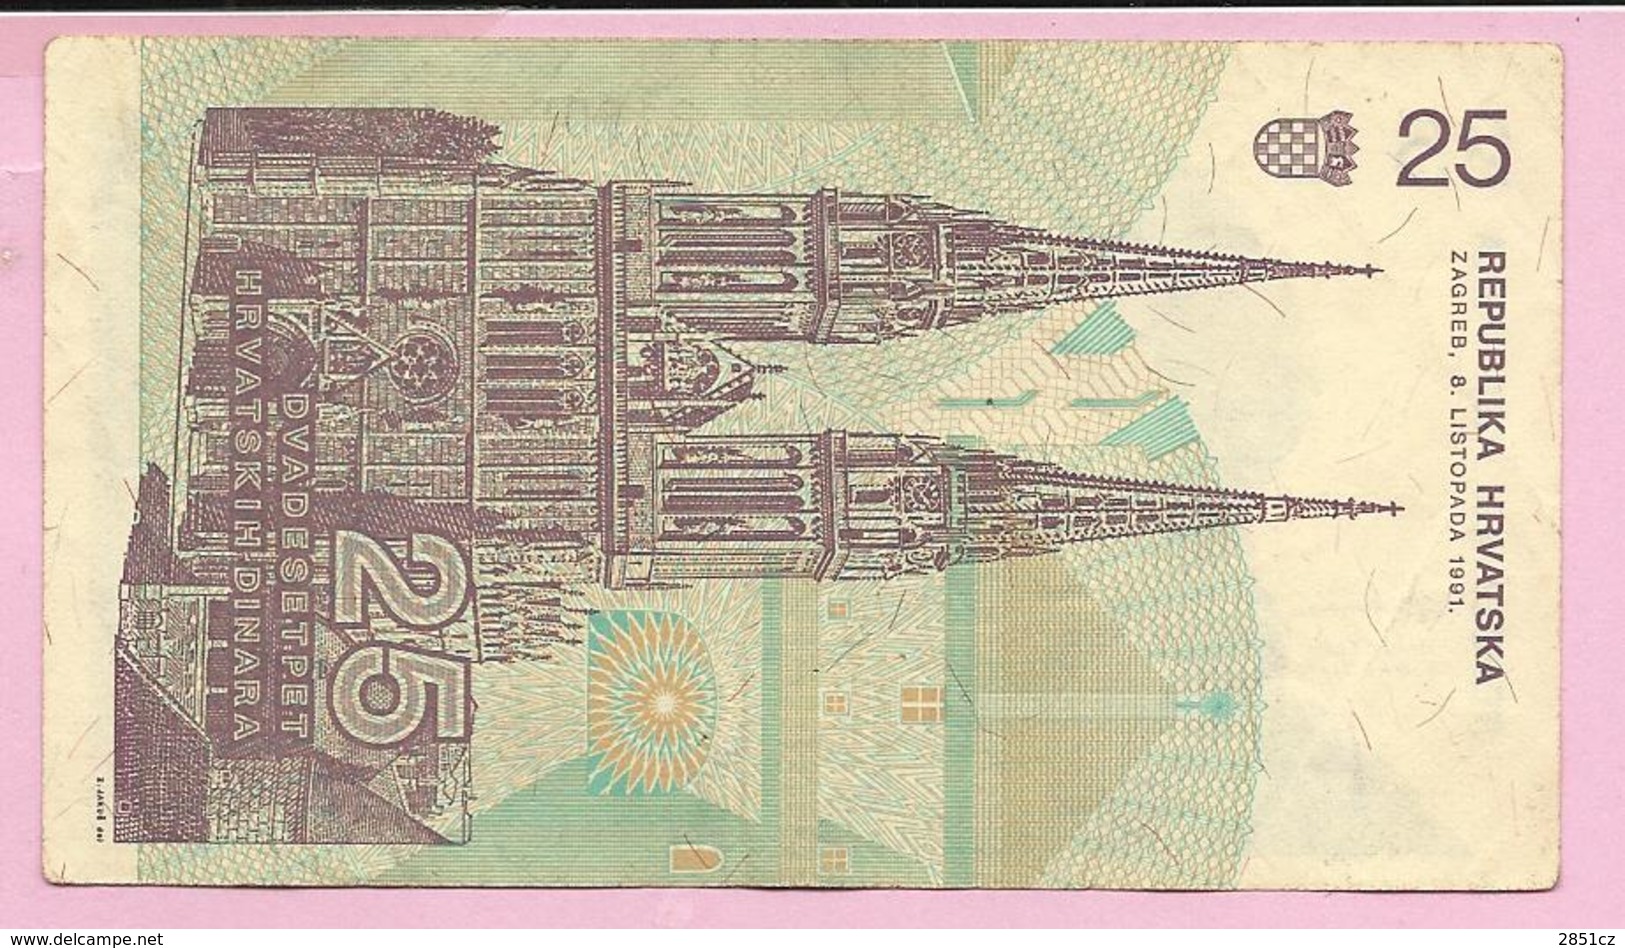 Banknote - 25 HRD, 1991., Croatia, No 2150863709 - Croatie